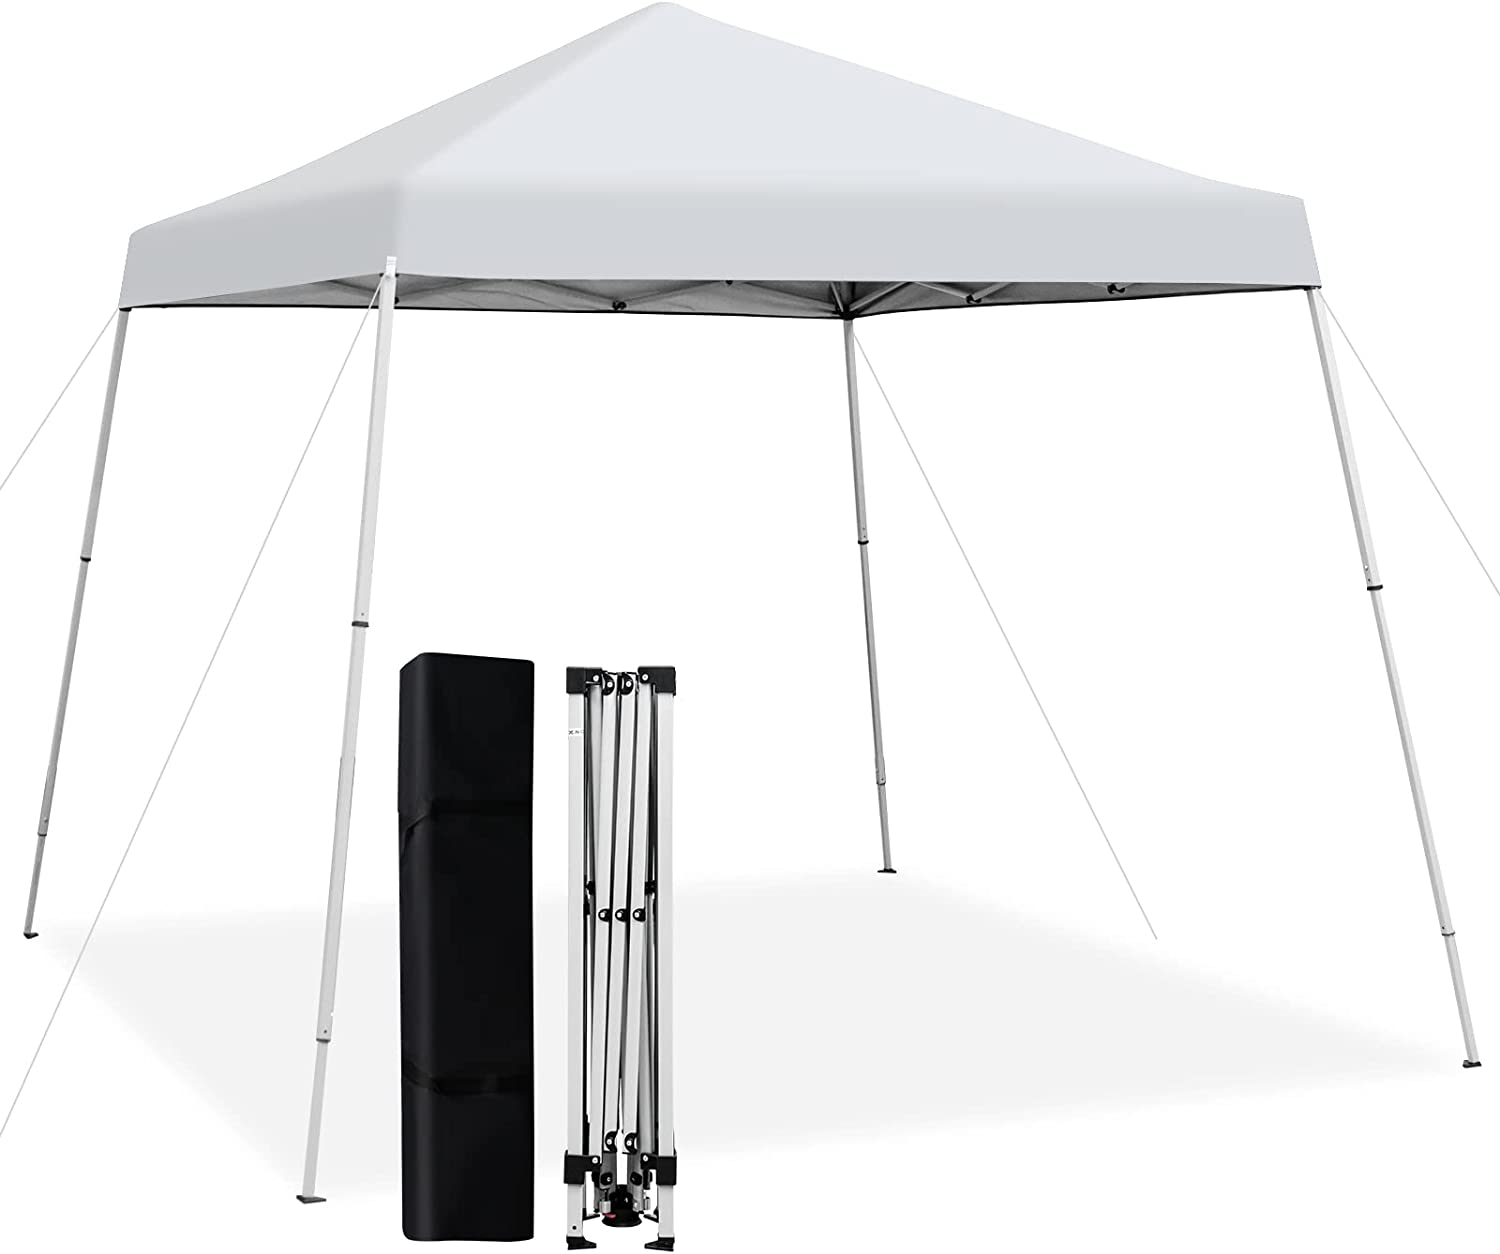 Tonnelle de Jardin 3x3m Pliable Pop Up Tente imperméable Anti-UV